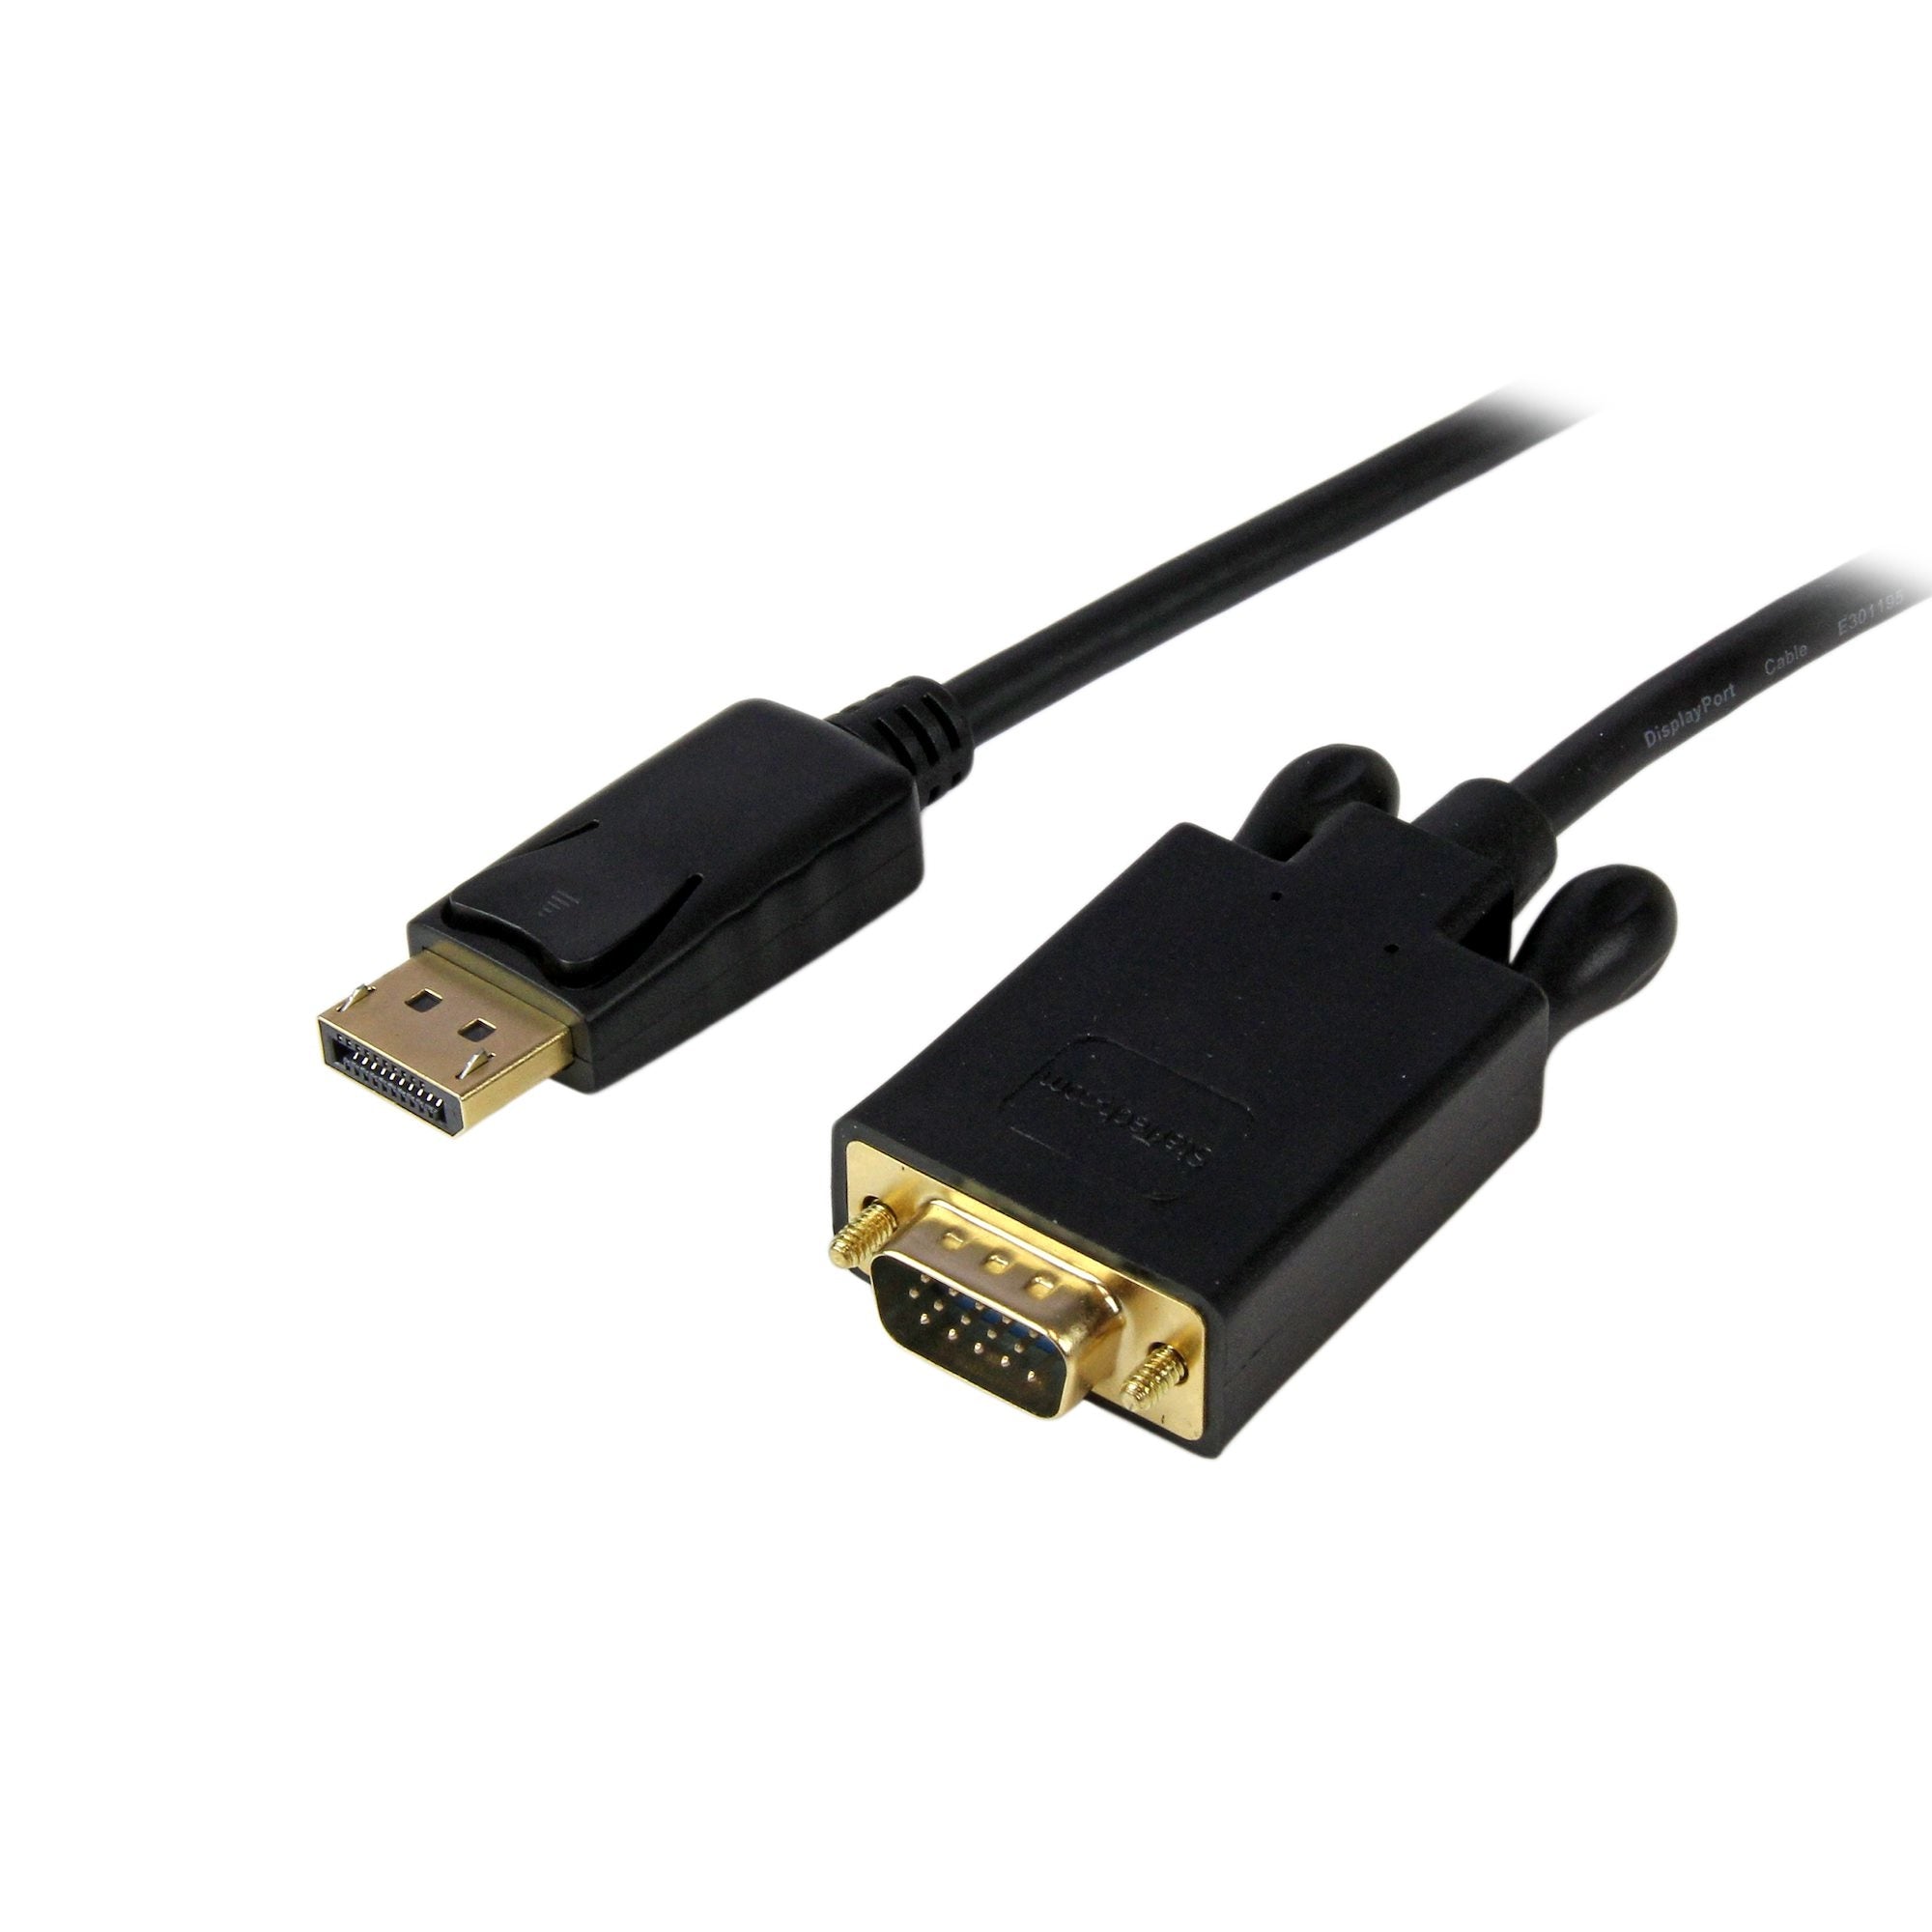 Cable 1.8M De Video Adaptador Convertidor Displayport Dp A Vga - Activo - 1080P - Negro - Startech.Com Mod. Dp2Vgamm6B